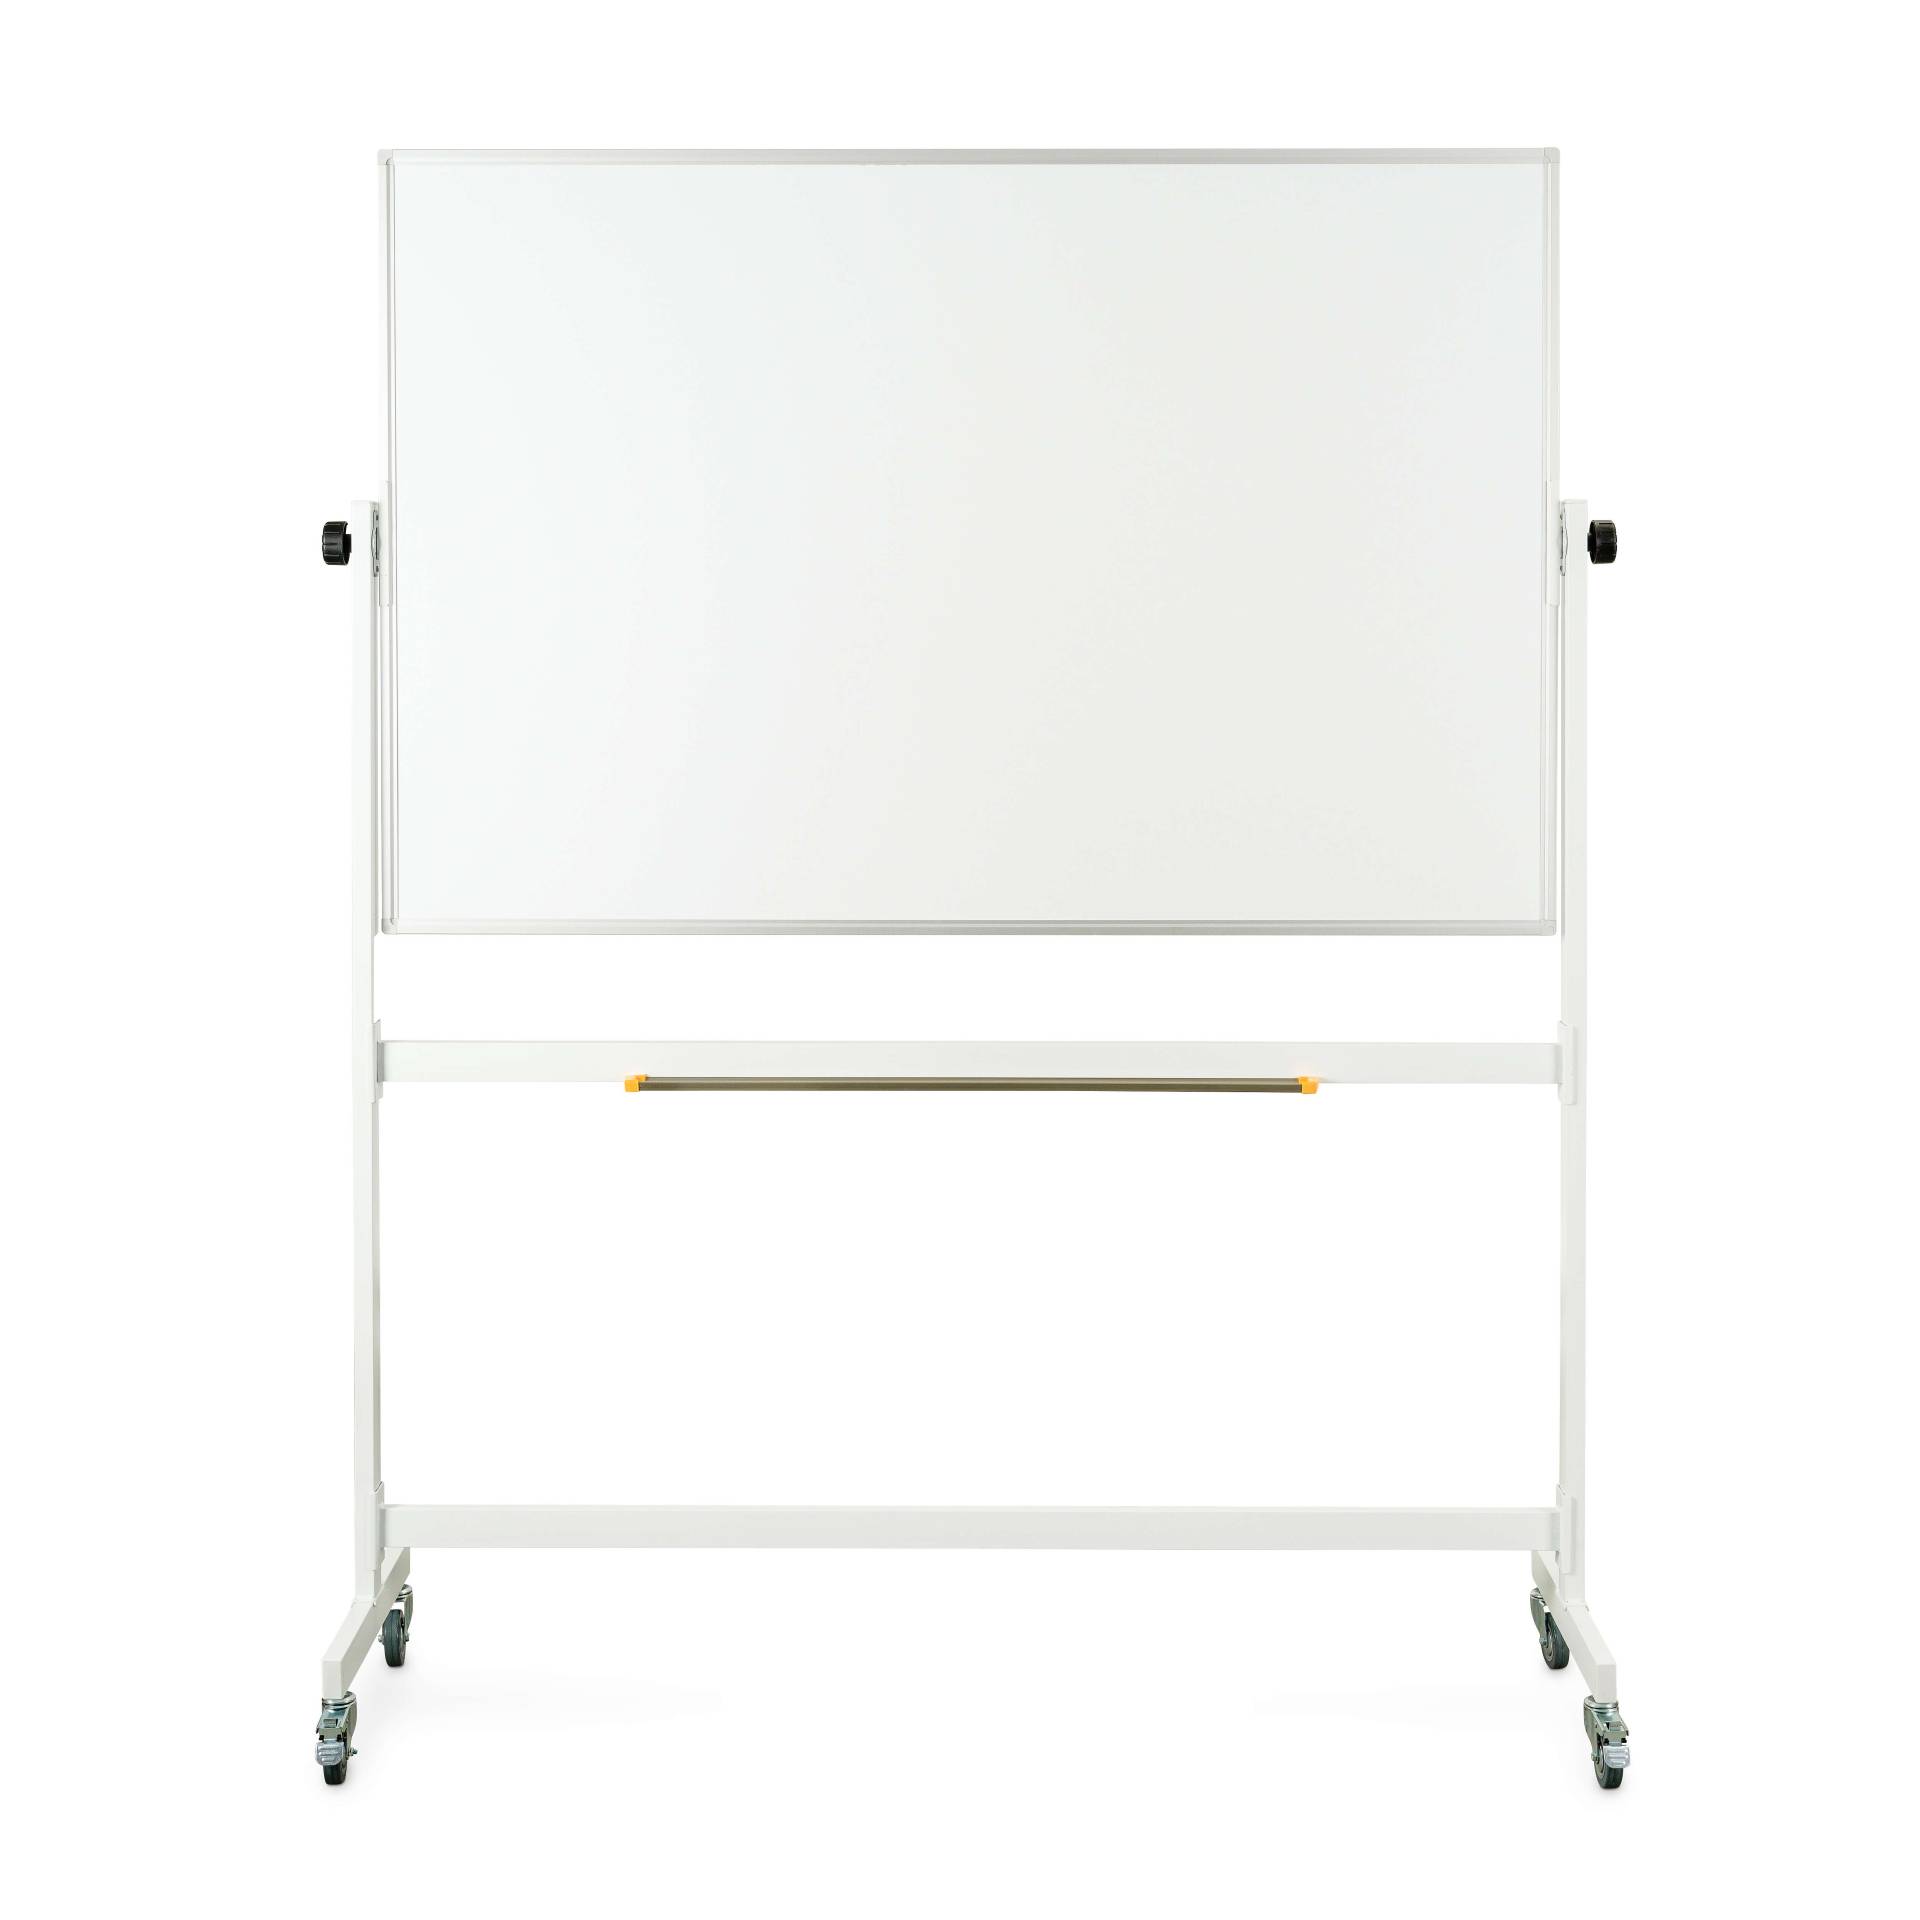 Sport-Thieme Drehgestelltafel, Beidseitig Whiteboard, 150x100 cm von Sport-Thieme